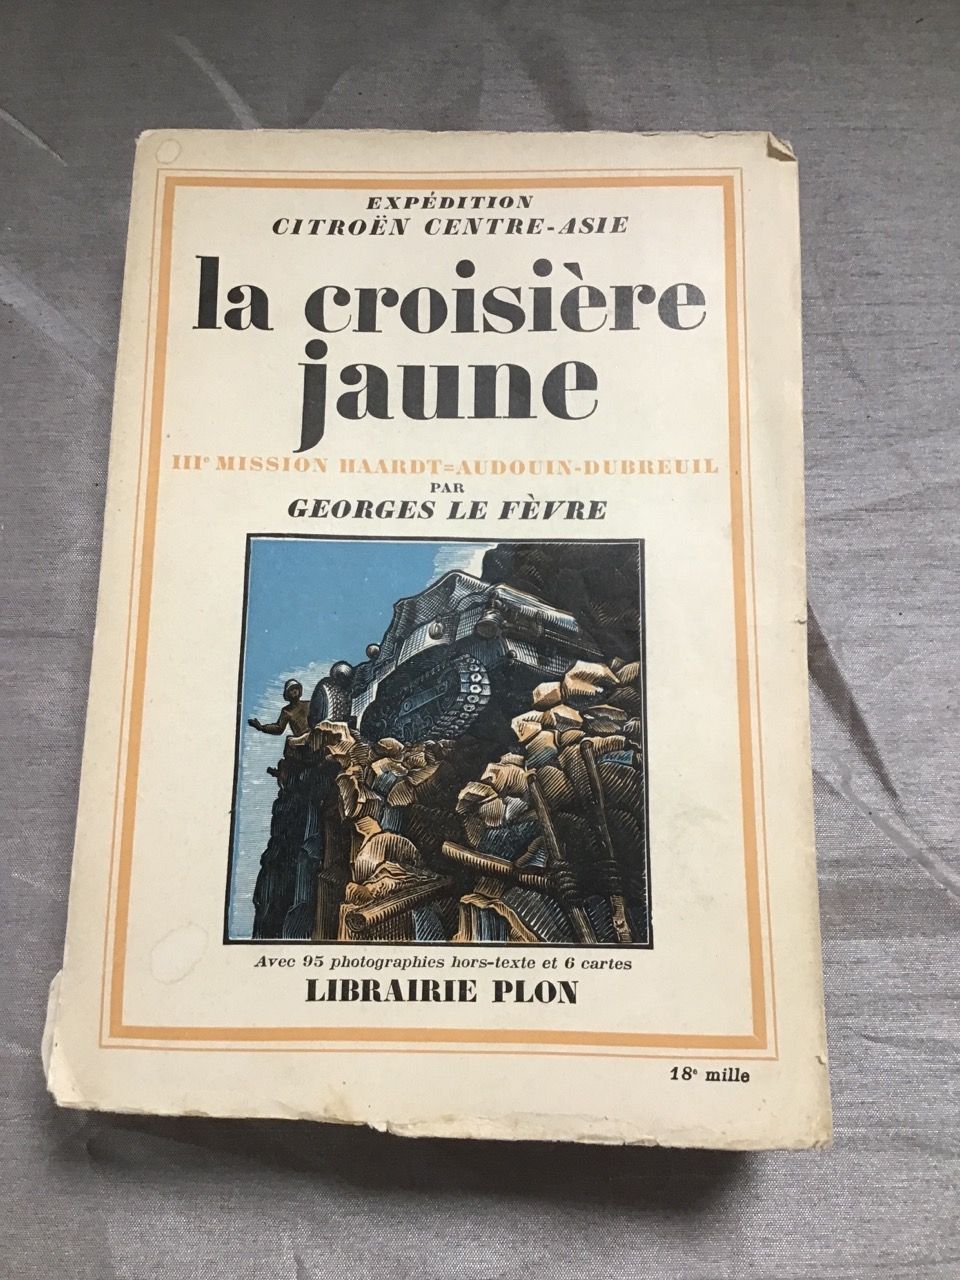 Null "La croisière jaune, 3ème mission"，作者Georges Le Fèvre，序言André Citroen 1933
&hellip;